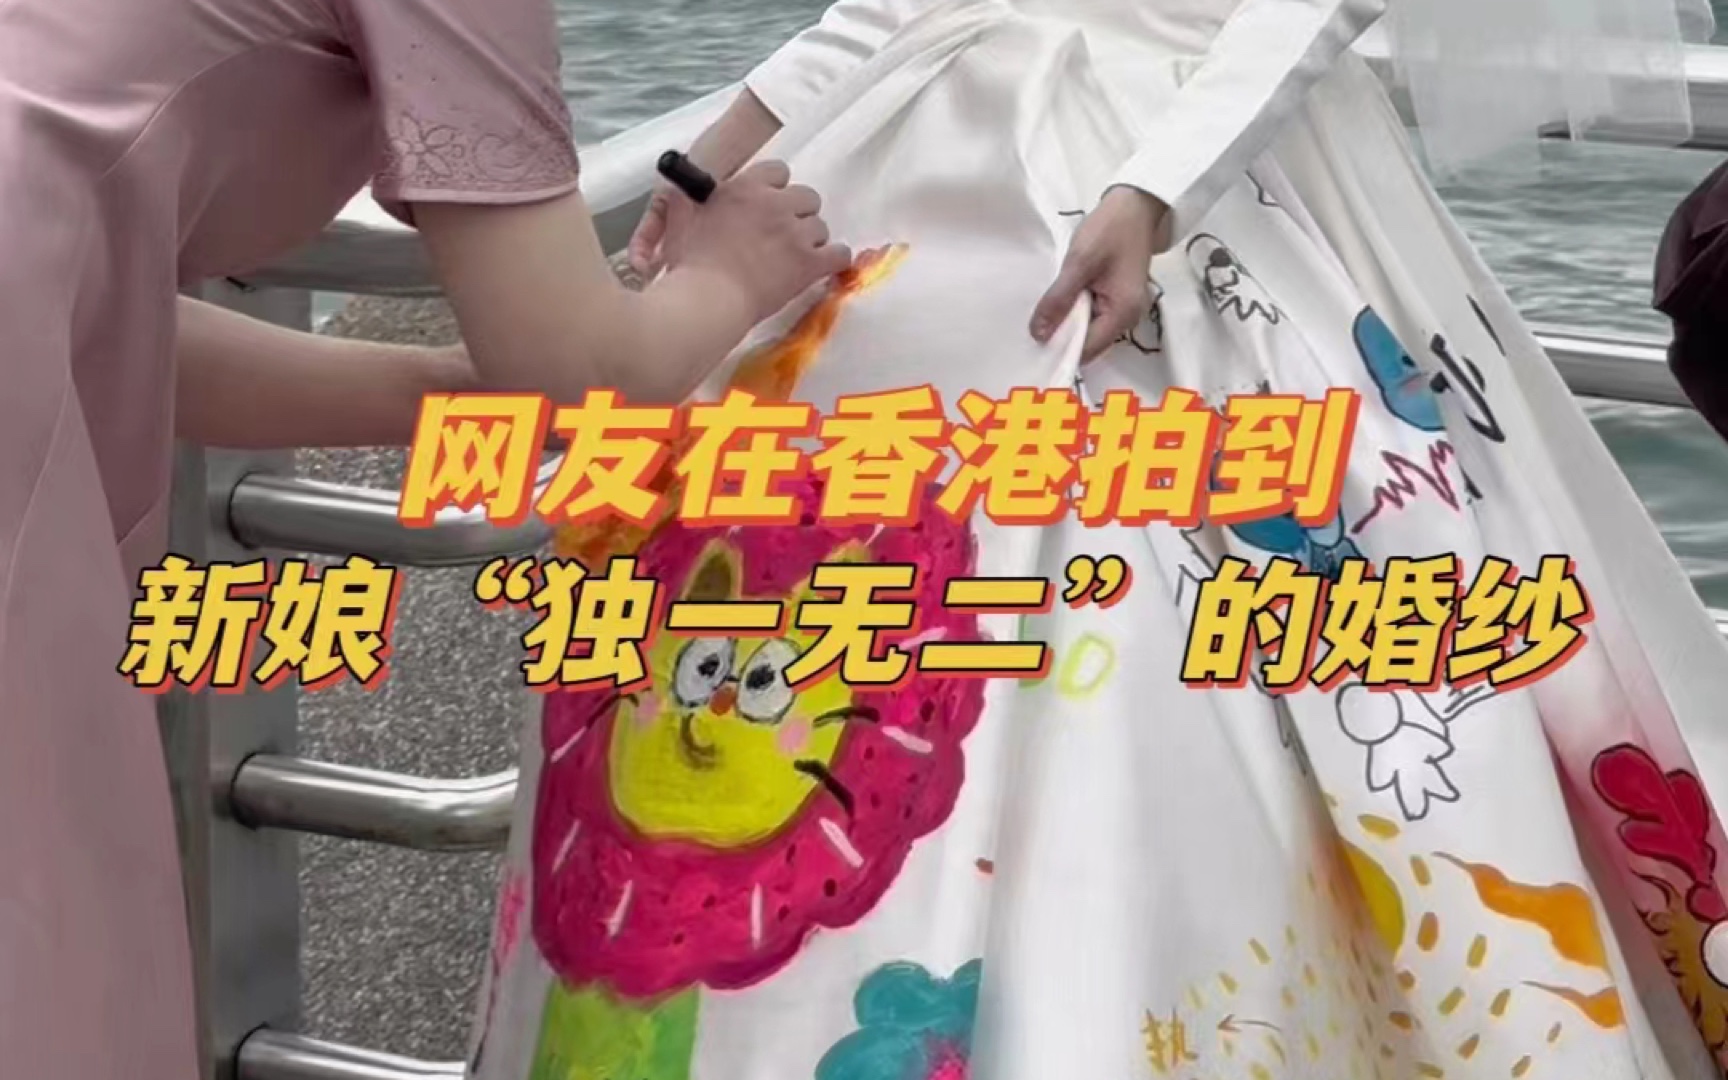 女子在香港街头拍到穿着特别婚纱的新娘，“感受到幸福的具象化”